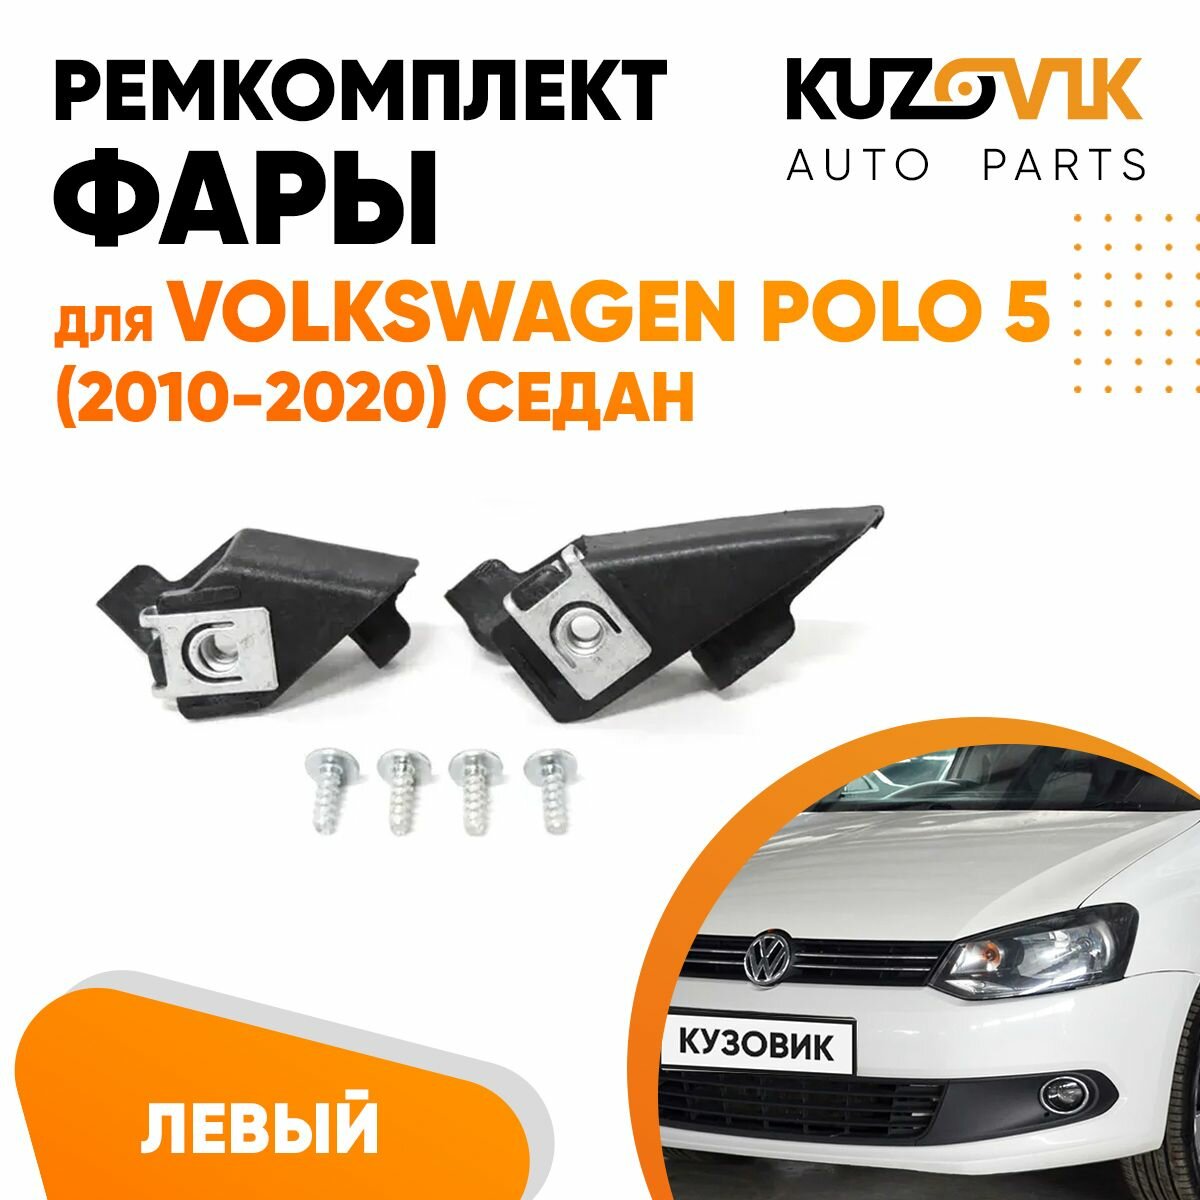 Ремкомплект фары левый для Фольксваген Поло Volkswagen Polo 5 (2010-2020) седан, крепление, кронштейн, зажим